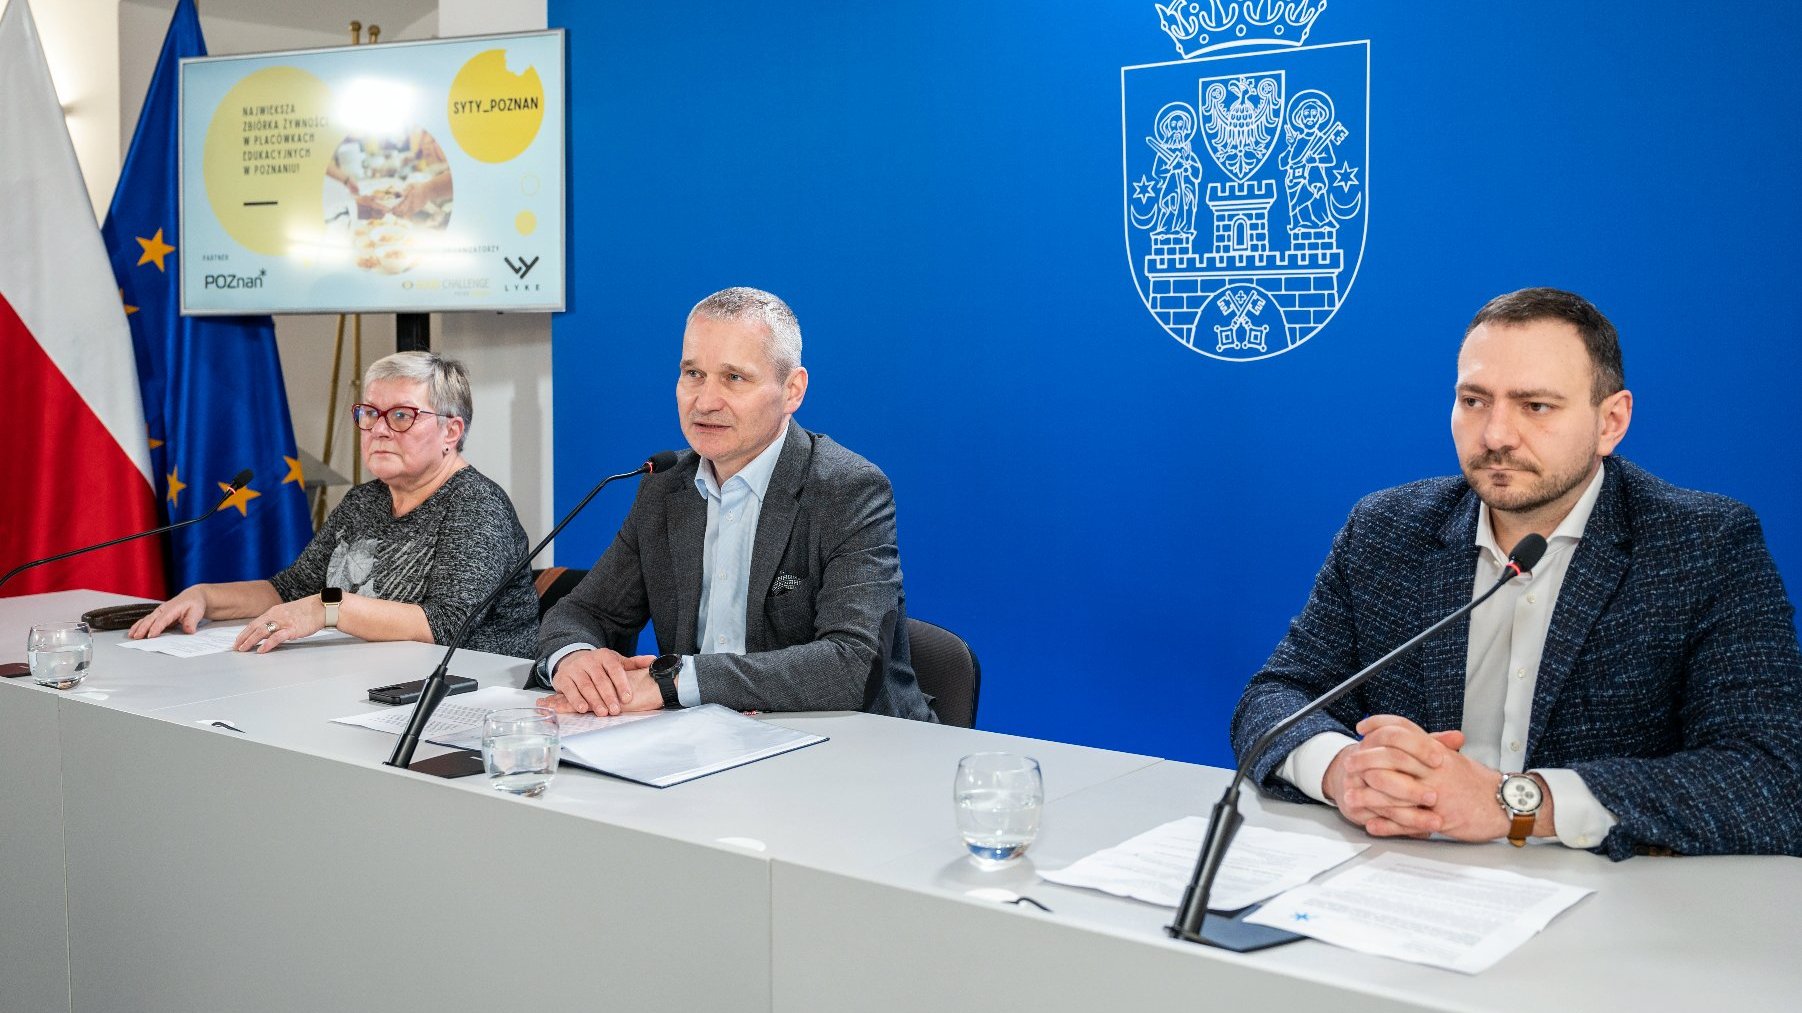 Na zdjęciu trzy osoby, dwóch mężczyzn i kobieta, za stołem konferencyjnym